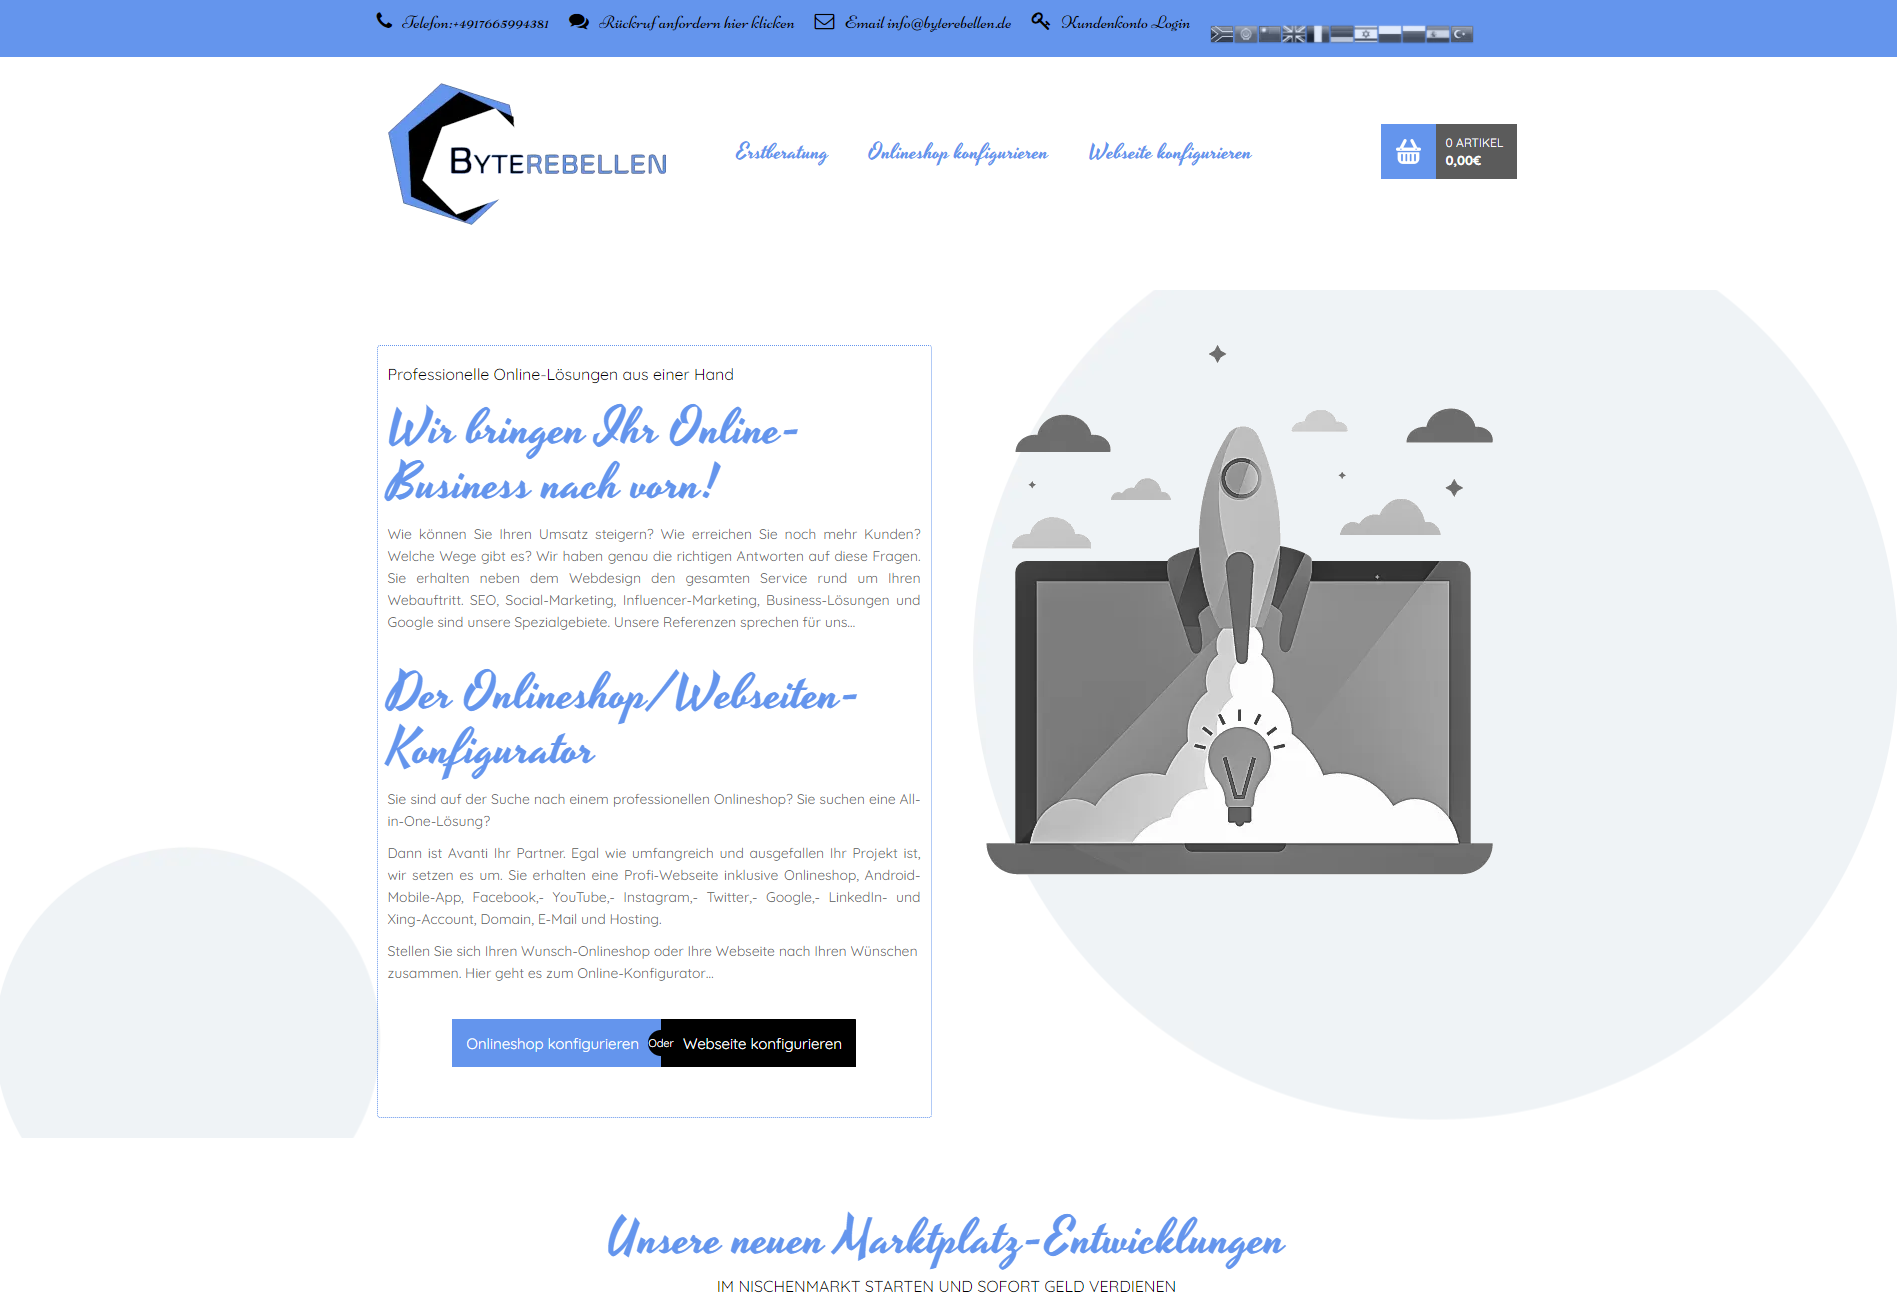 Byterebellen-Die Onlineshopschmiede für Profi-Onlineshops aus Potsdam